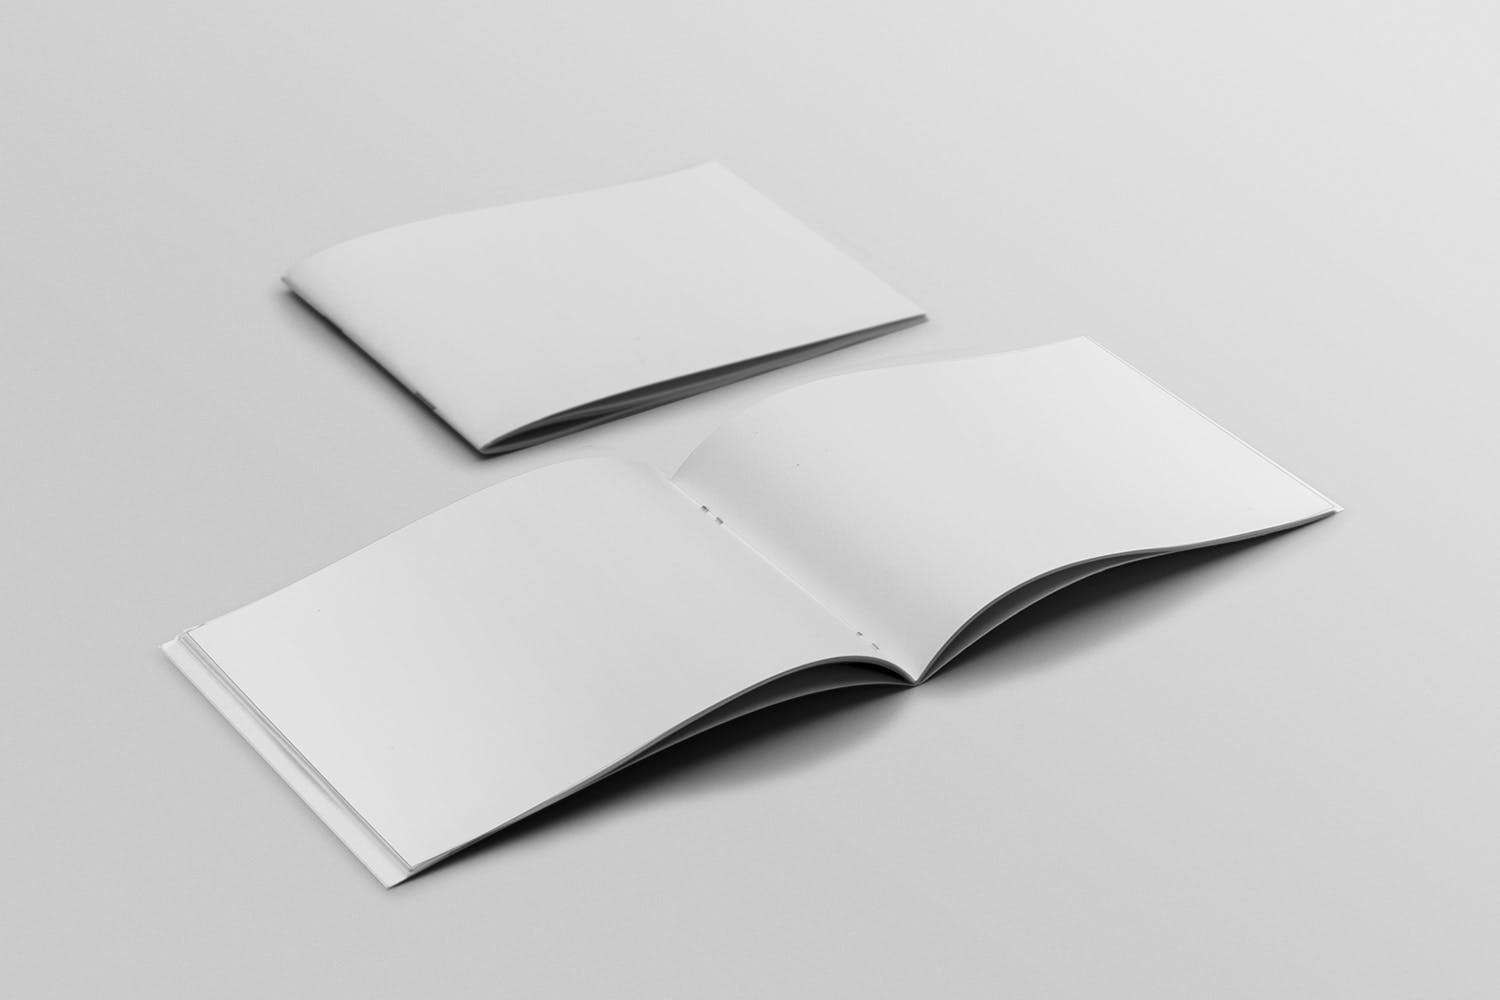 宣传画册/企业画册封面&内页版式设计45度角效果图样机16设计网精选 Cover & Open Landscape Brochure Mockup插图(1)